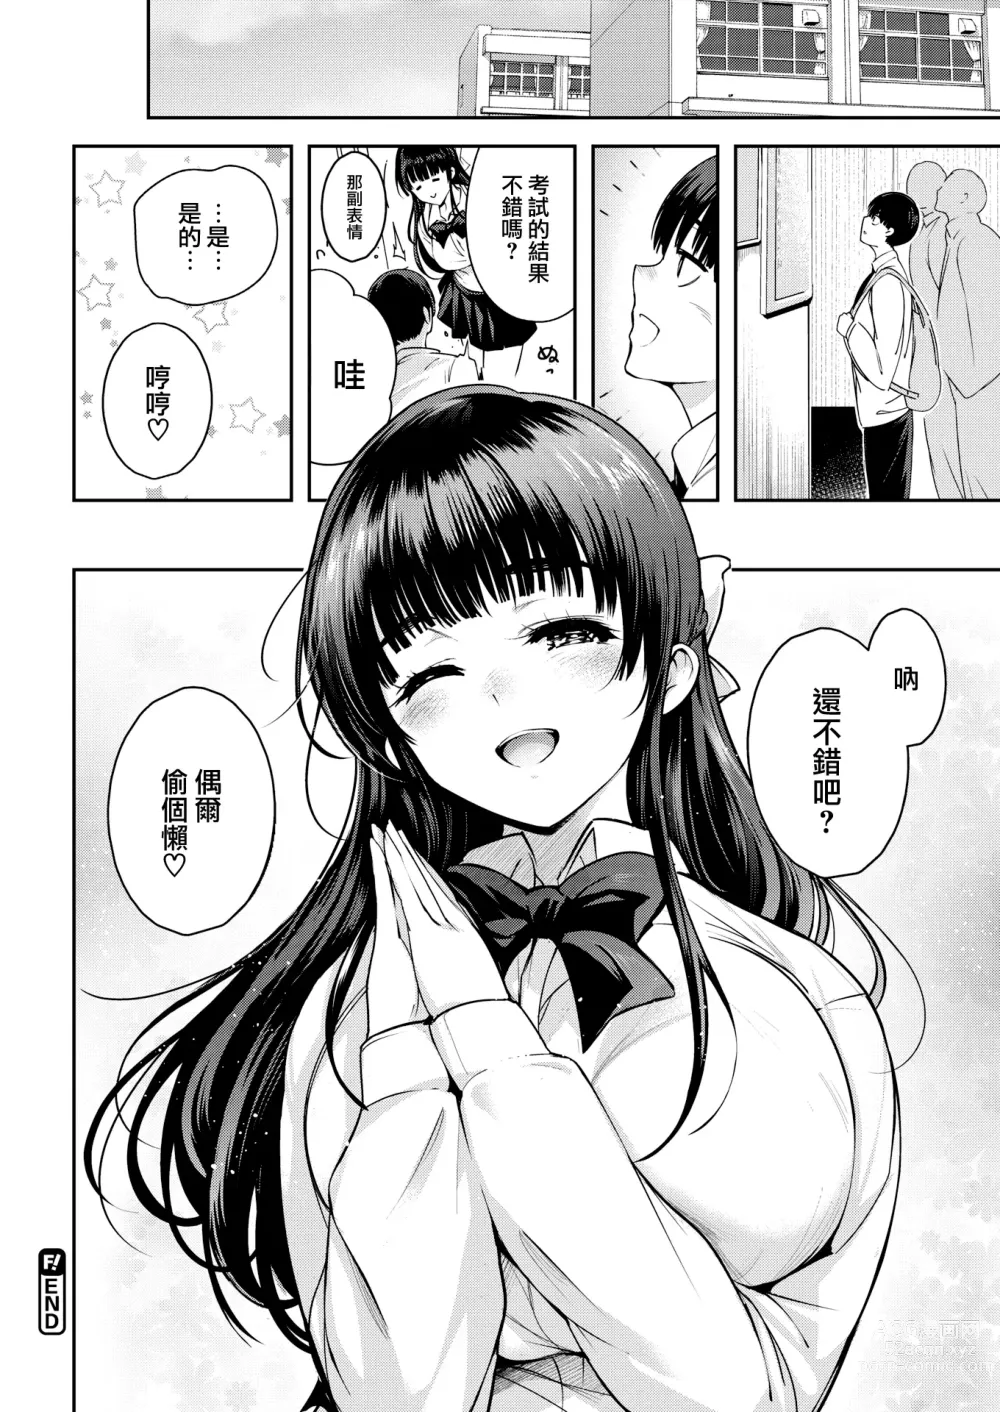 Page 17 of manga Aoi Sora no Mashita de